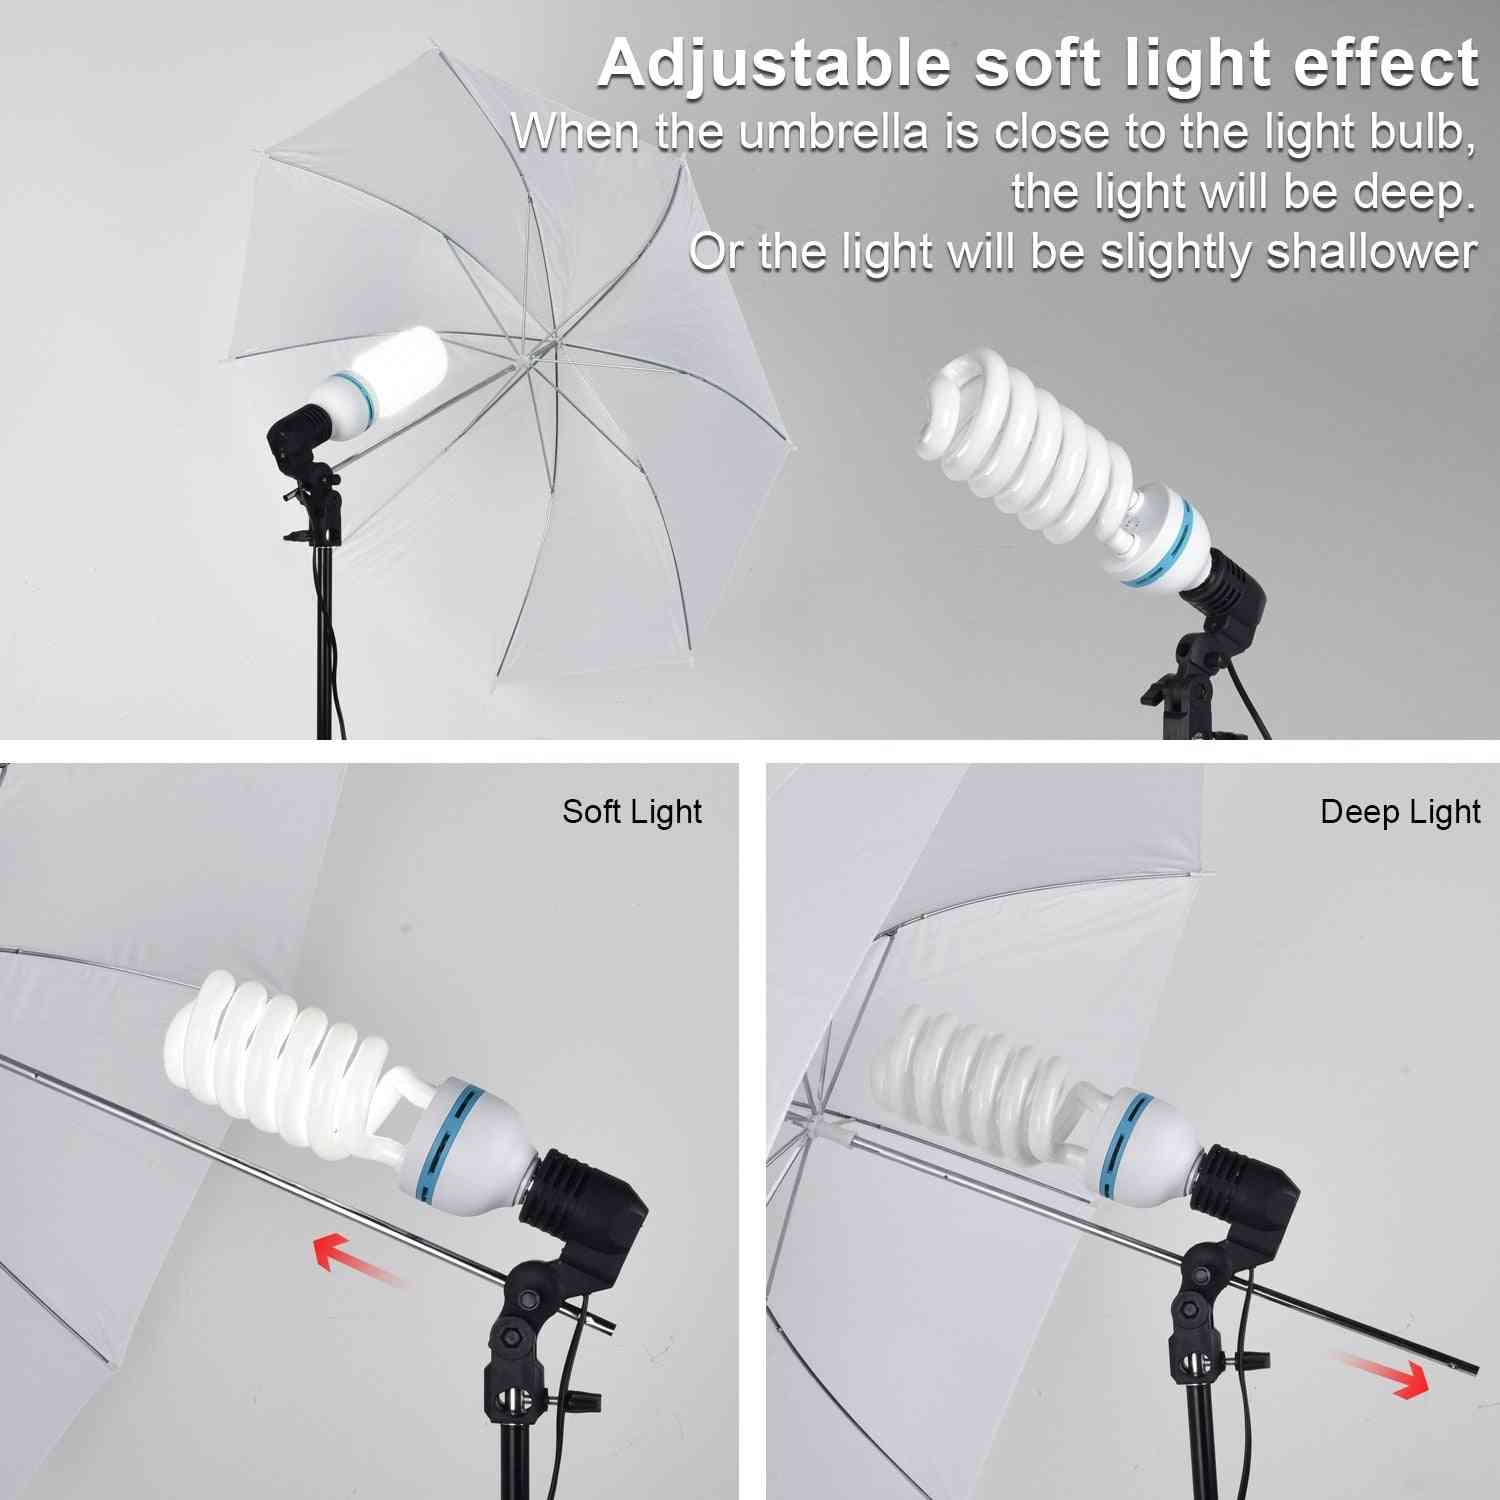 Studio ombrello foto illuminazione sfondo kit + 4 fondali + 2 ombrelli + 2 lampadine * 135w + riflettore + supporto per fondale